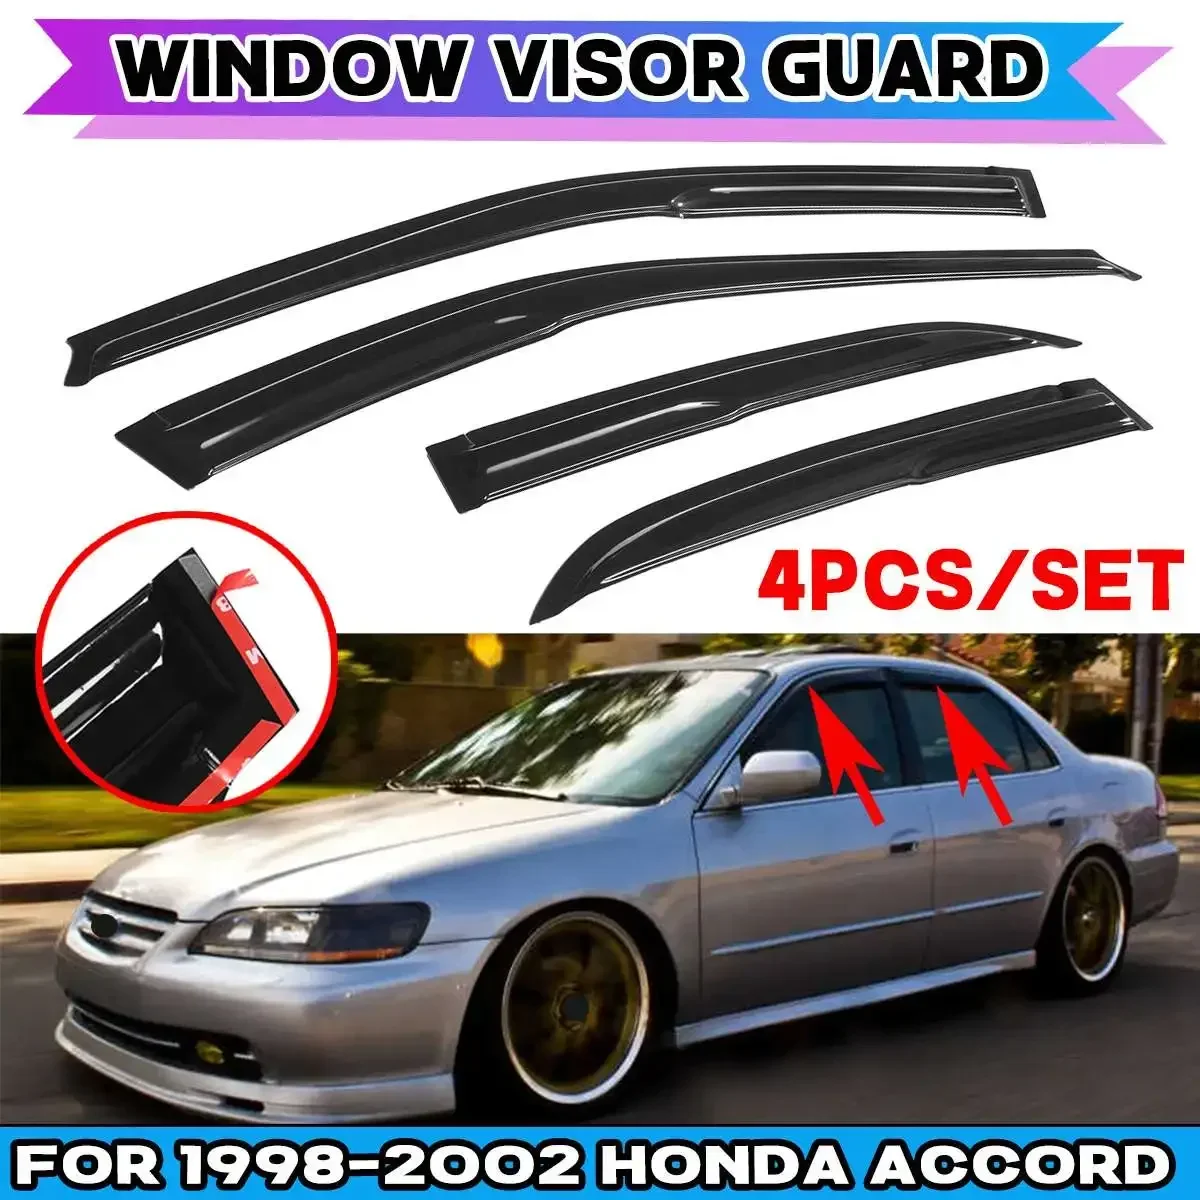 

Ветрозащитный козырек для автомобиля Honda Accord 1998-2002, черные ветрозащитные дефлекторы для окон, устойчивый к атмосферным воздействиям комплект дефлектора для корпуса